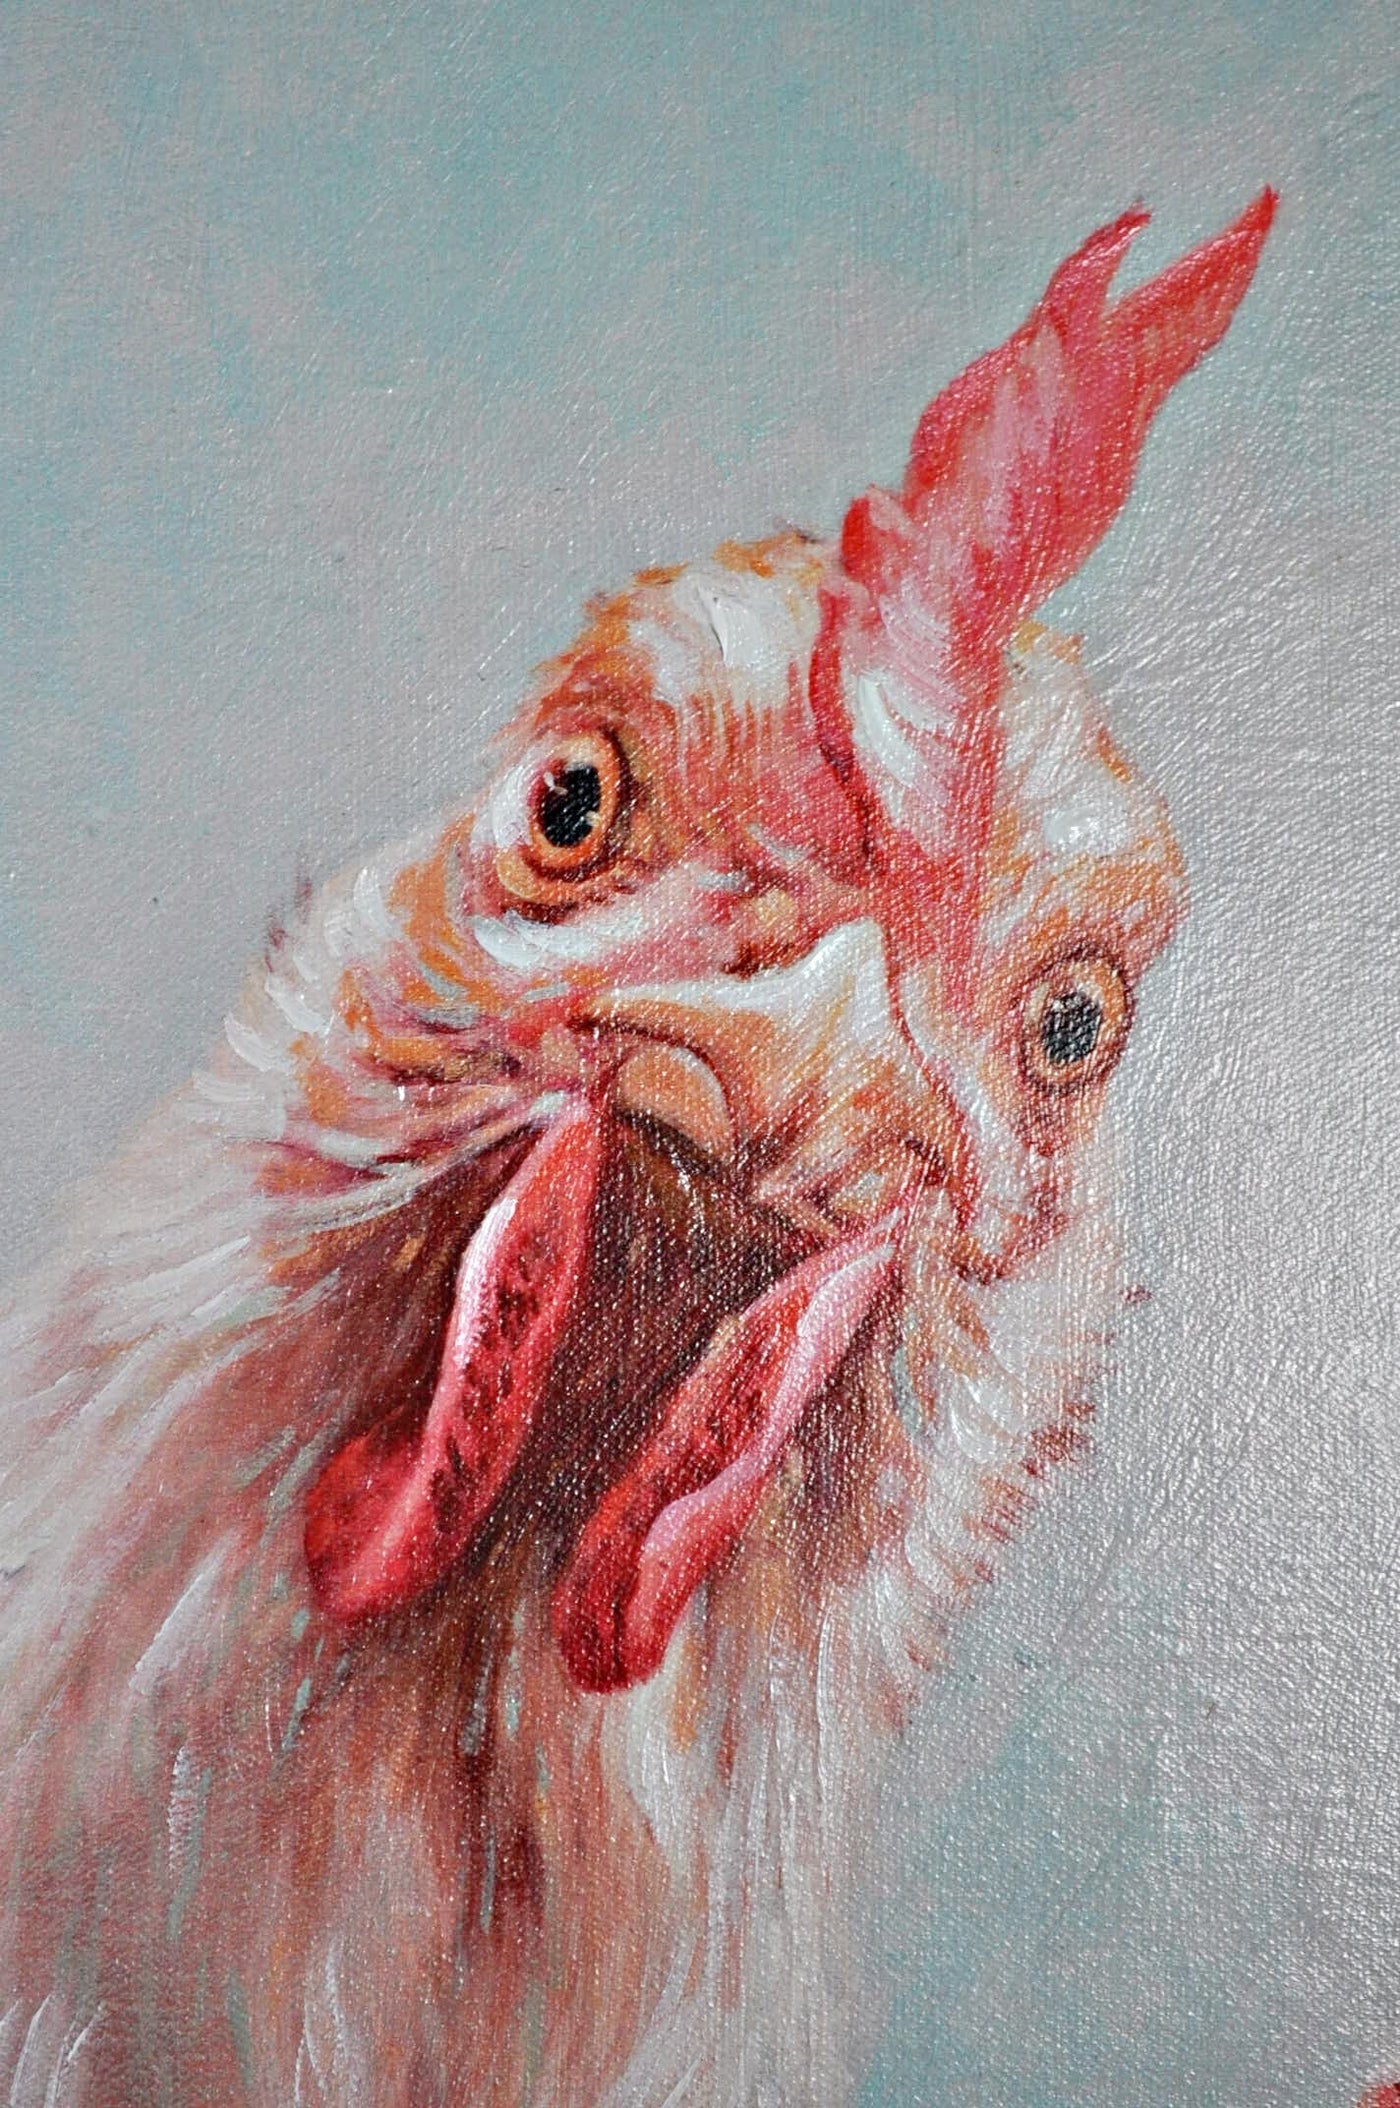 Leinwandbild "Hühner" 70 x 100 cm Schöne Deko